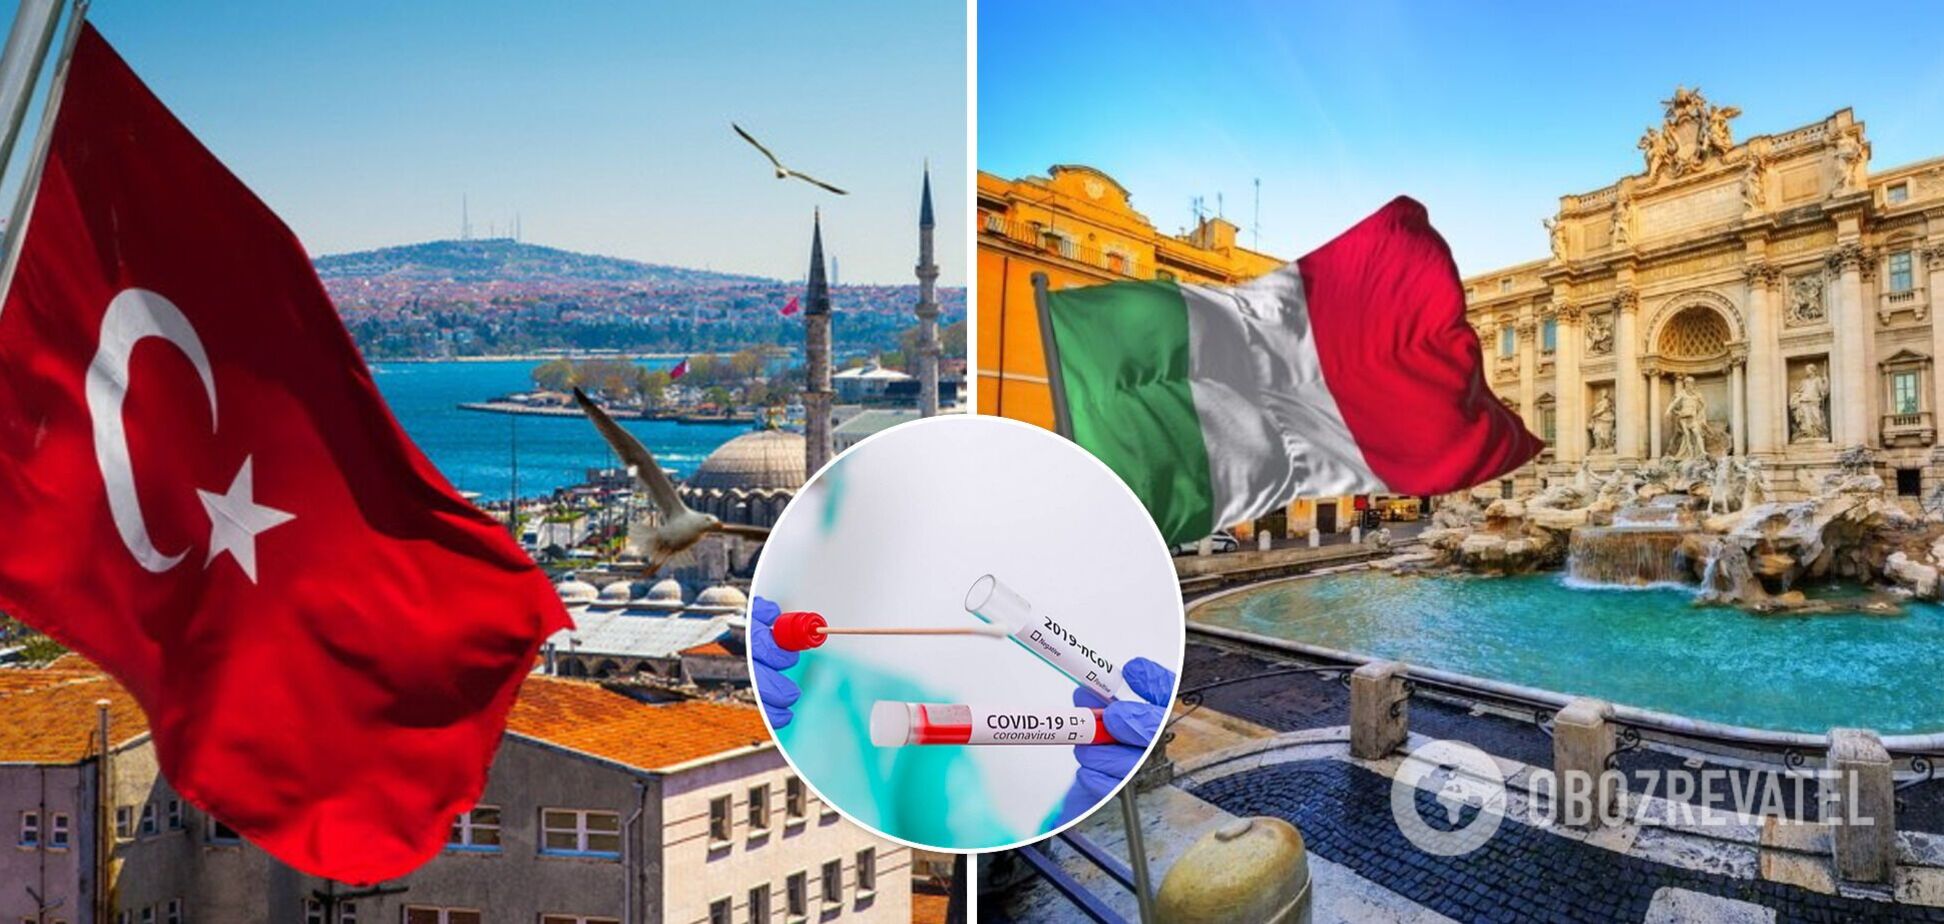 Италия и Турция отменили ПЦР-тесты для туристов. Что еще изменится с 1 июня и какие документы нужны украинцам